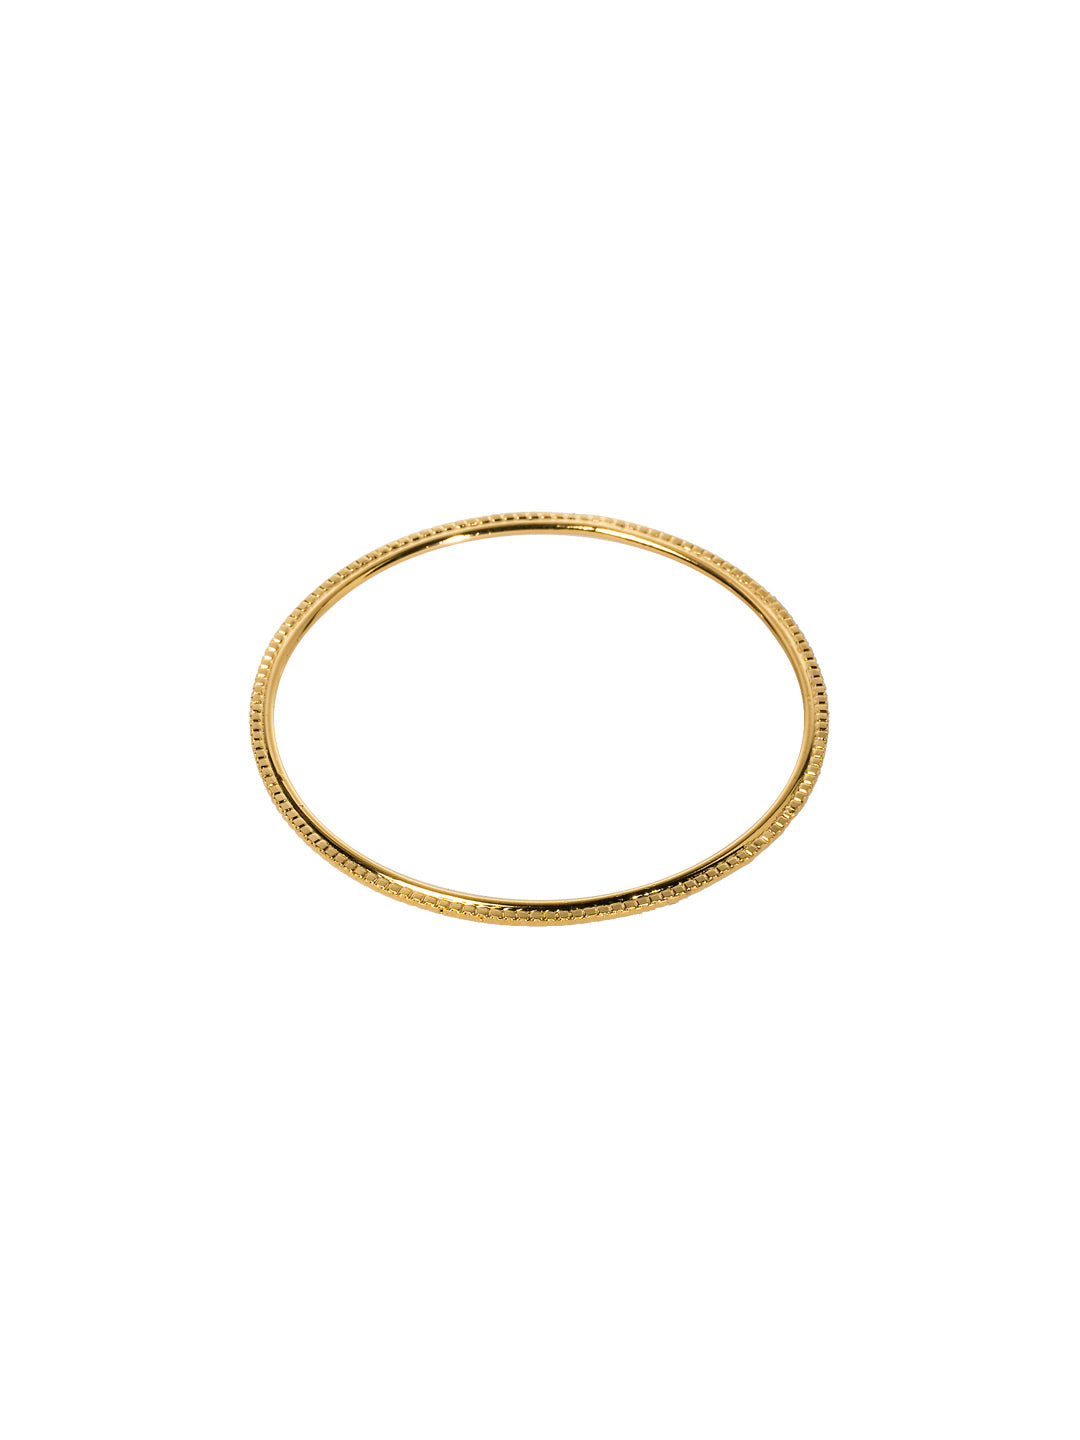 Product Image: Thin Line Bangle Bracelet